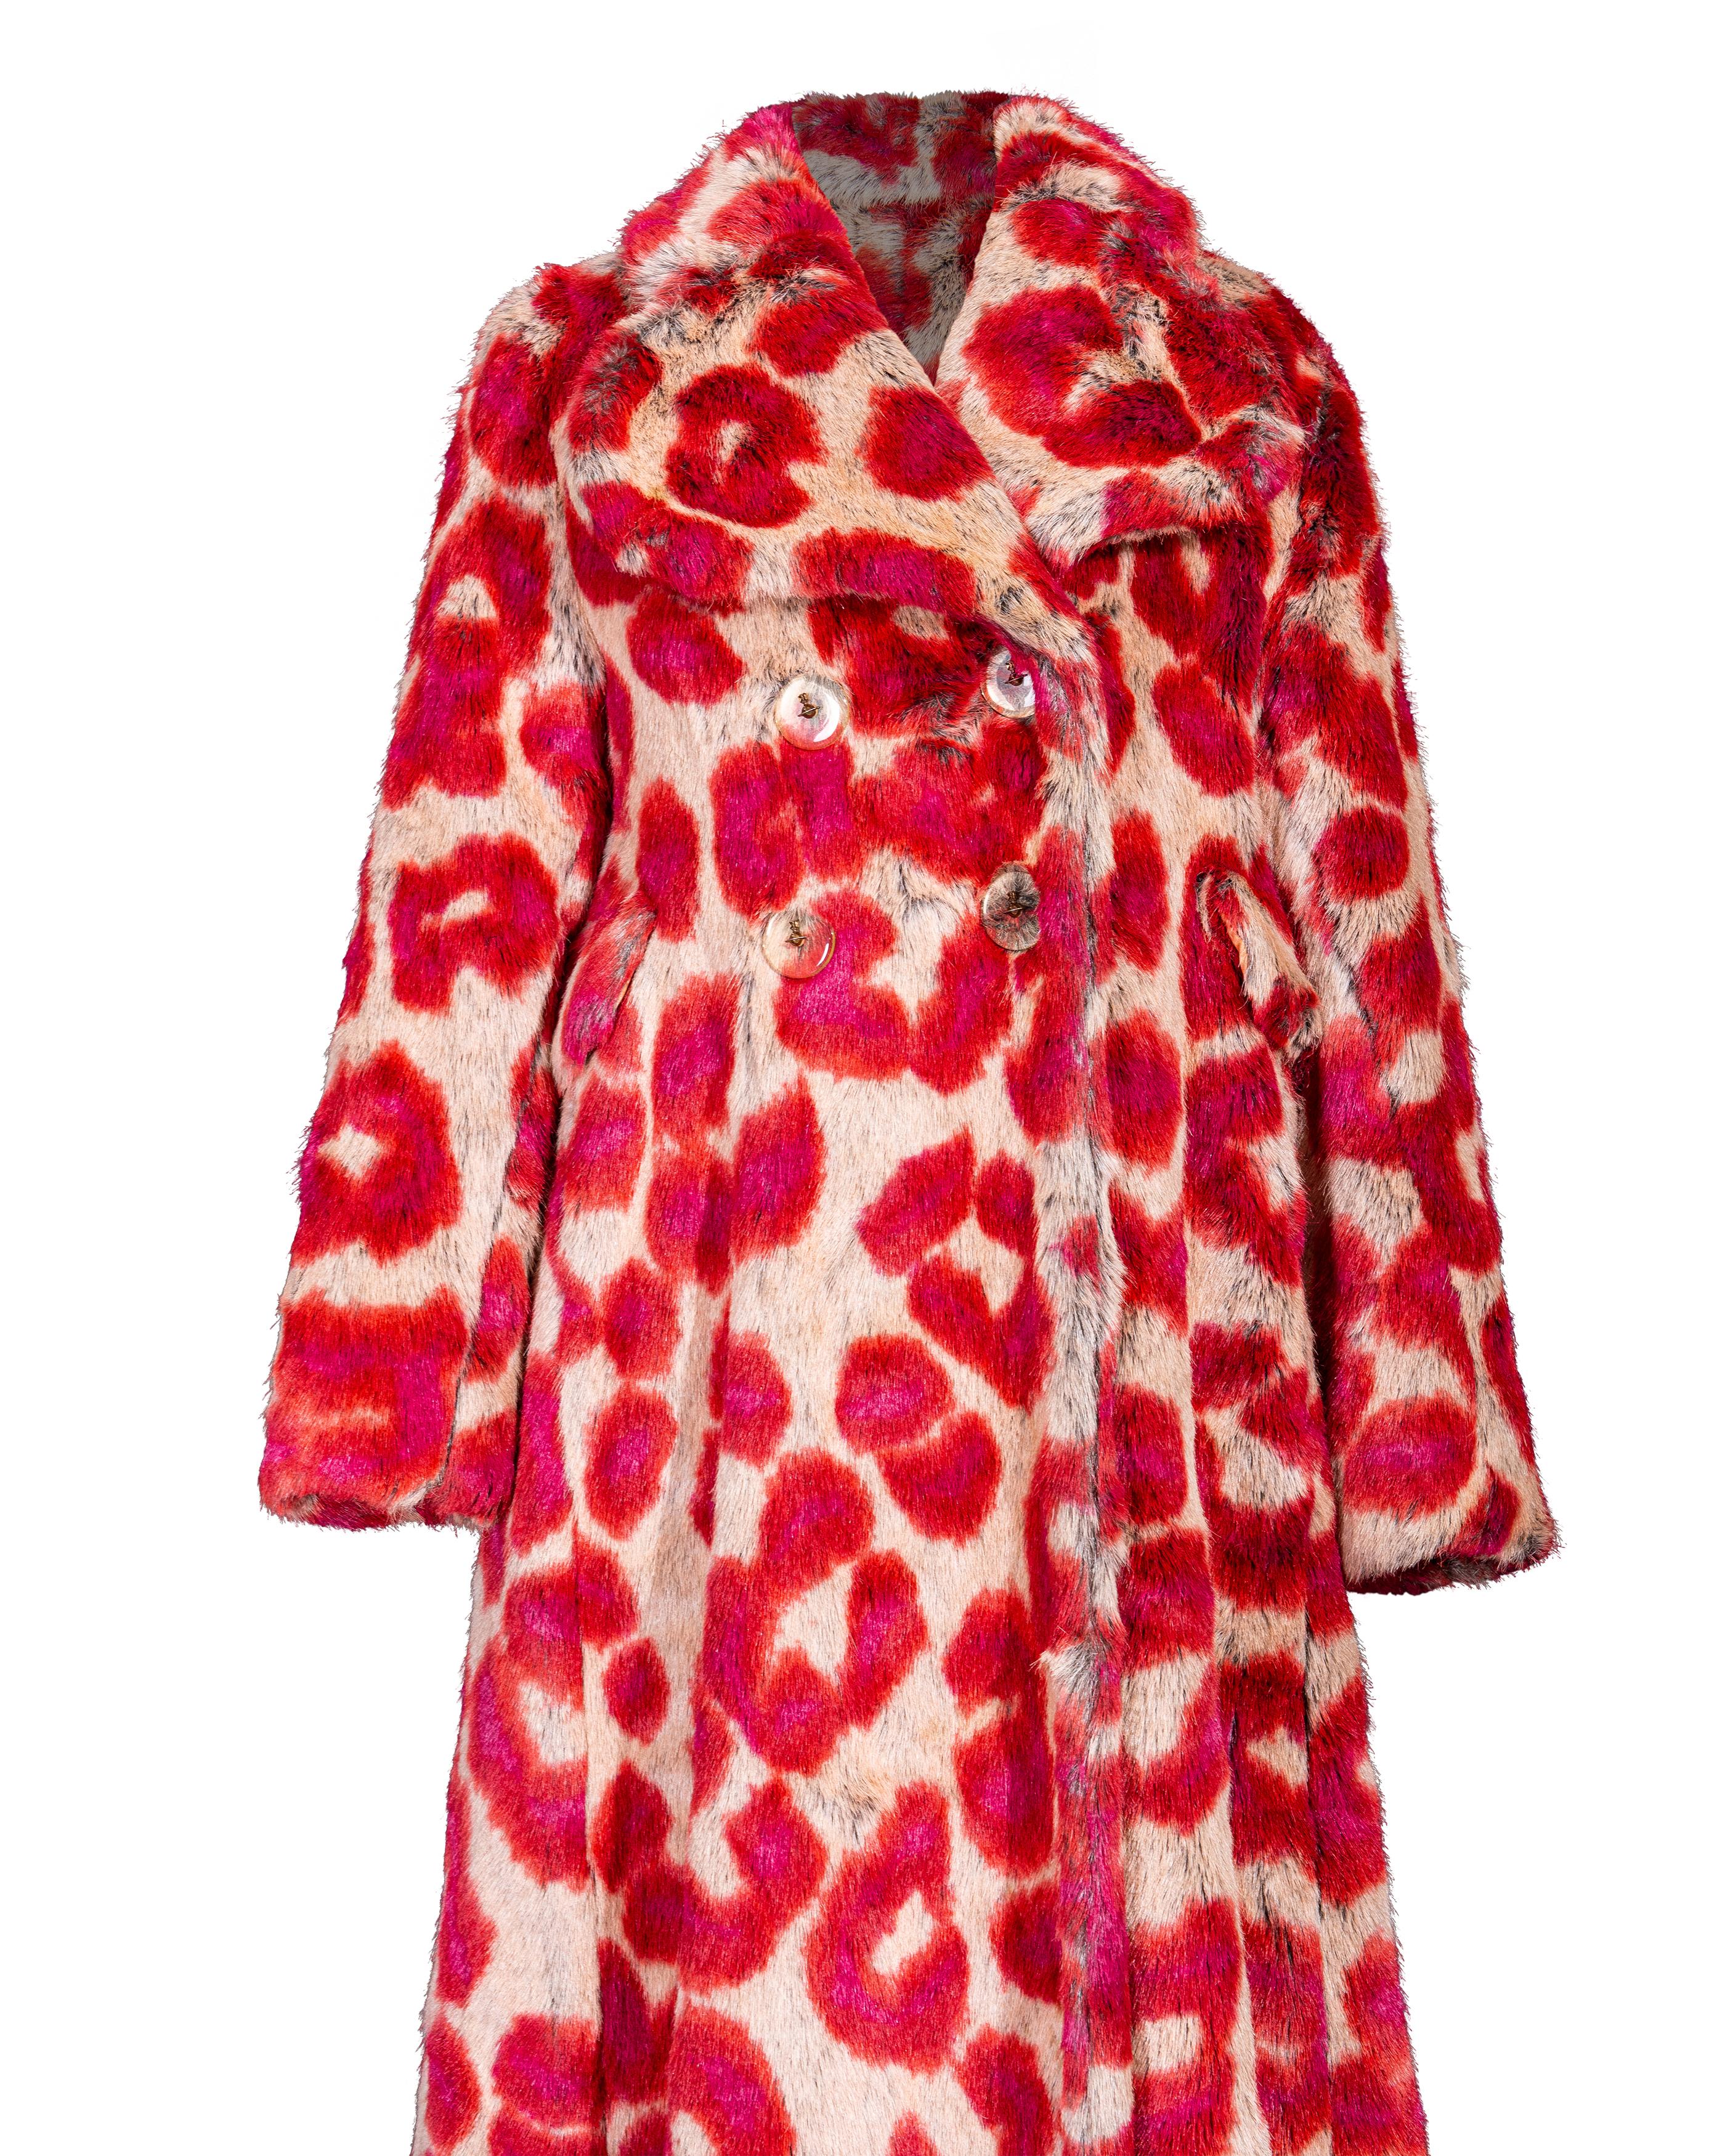 A/W 1992 Vivienne Westwood Faux Fur Leopard Print Coat and Glove Set For Sale 3